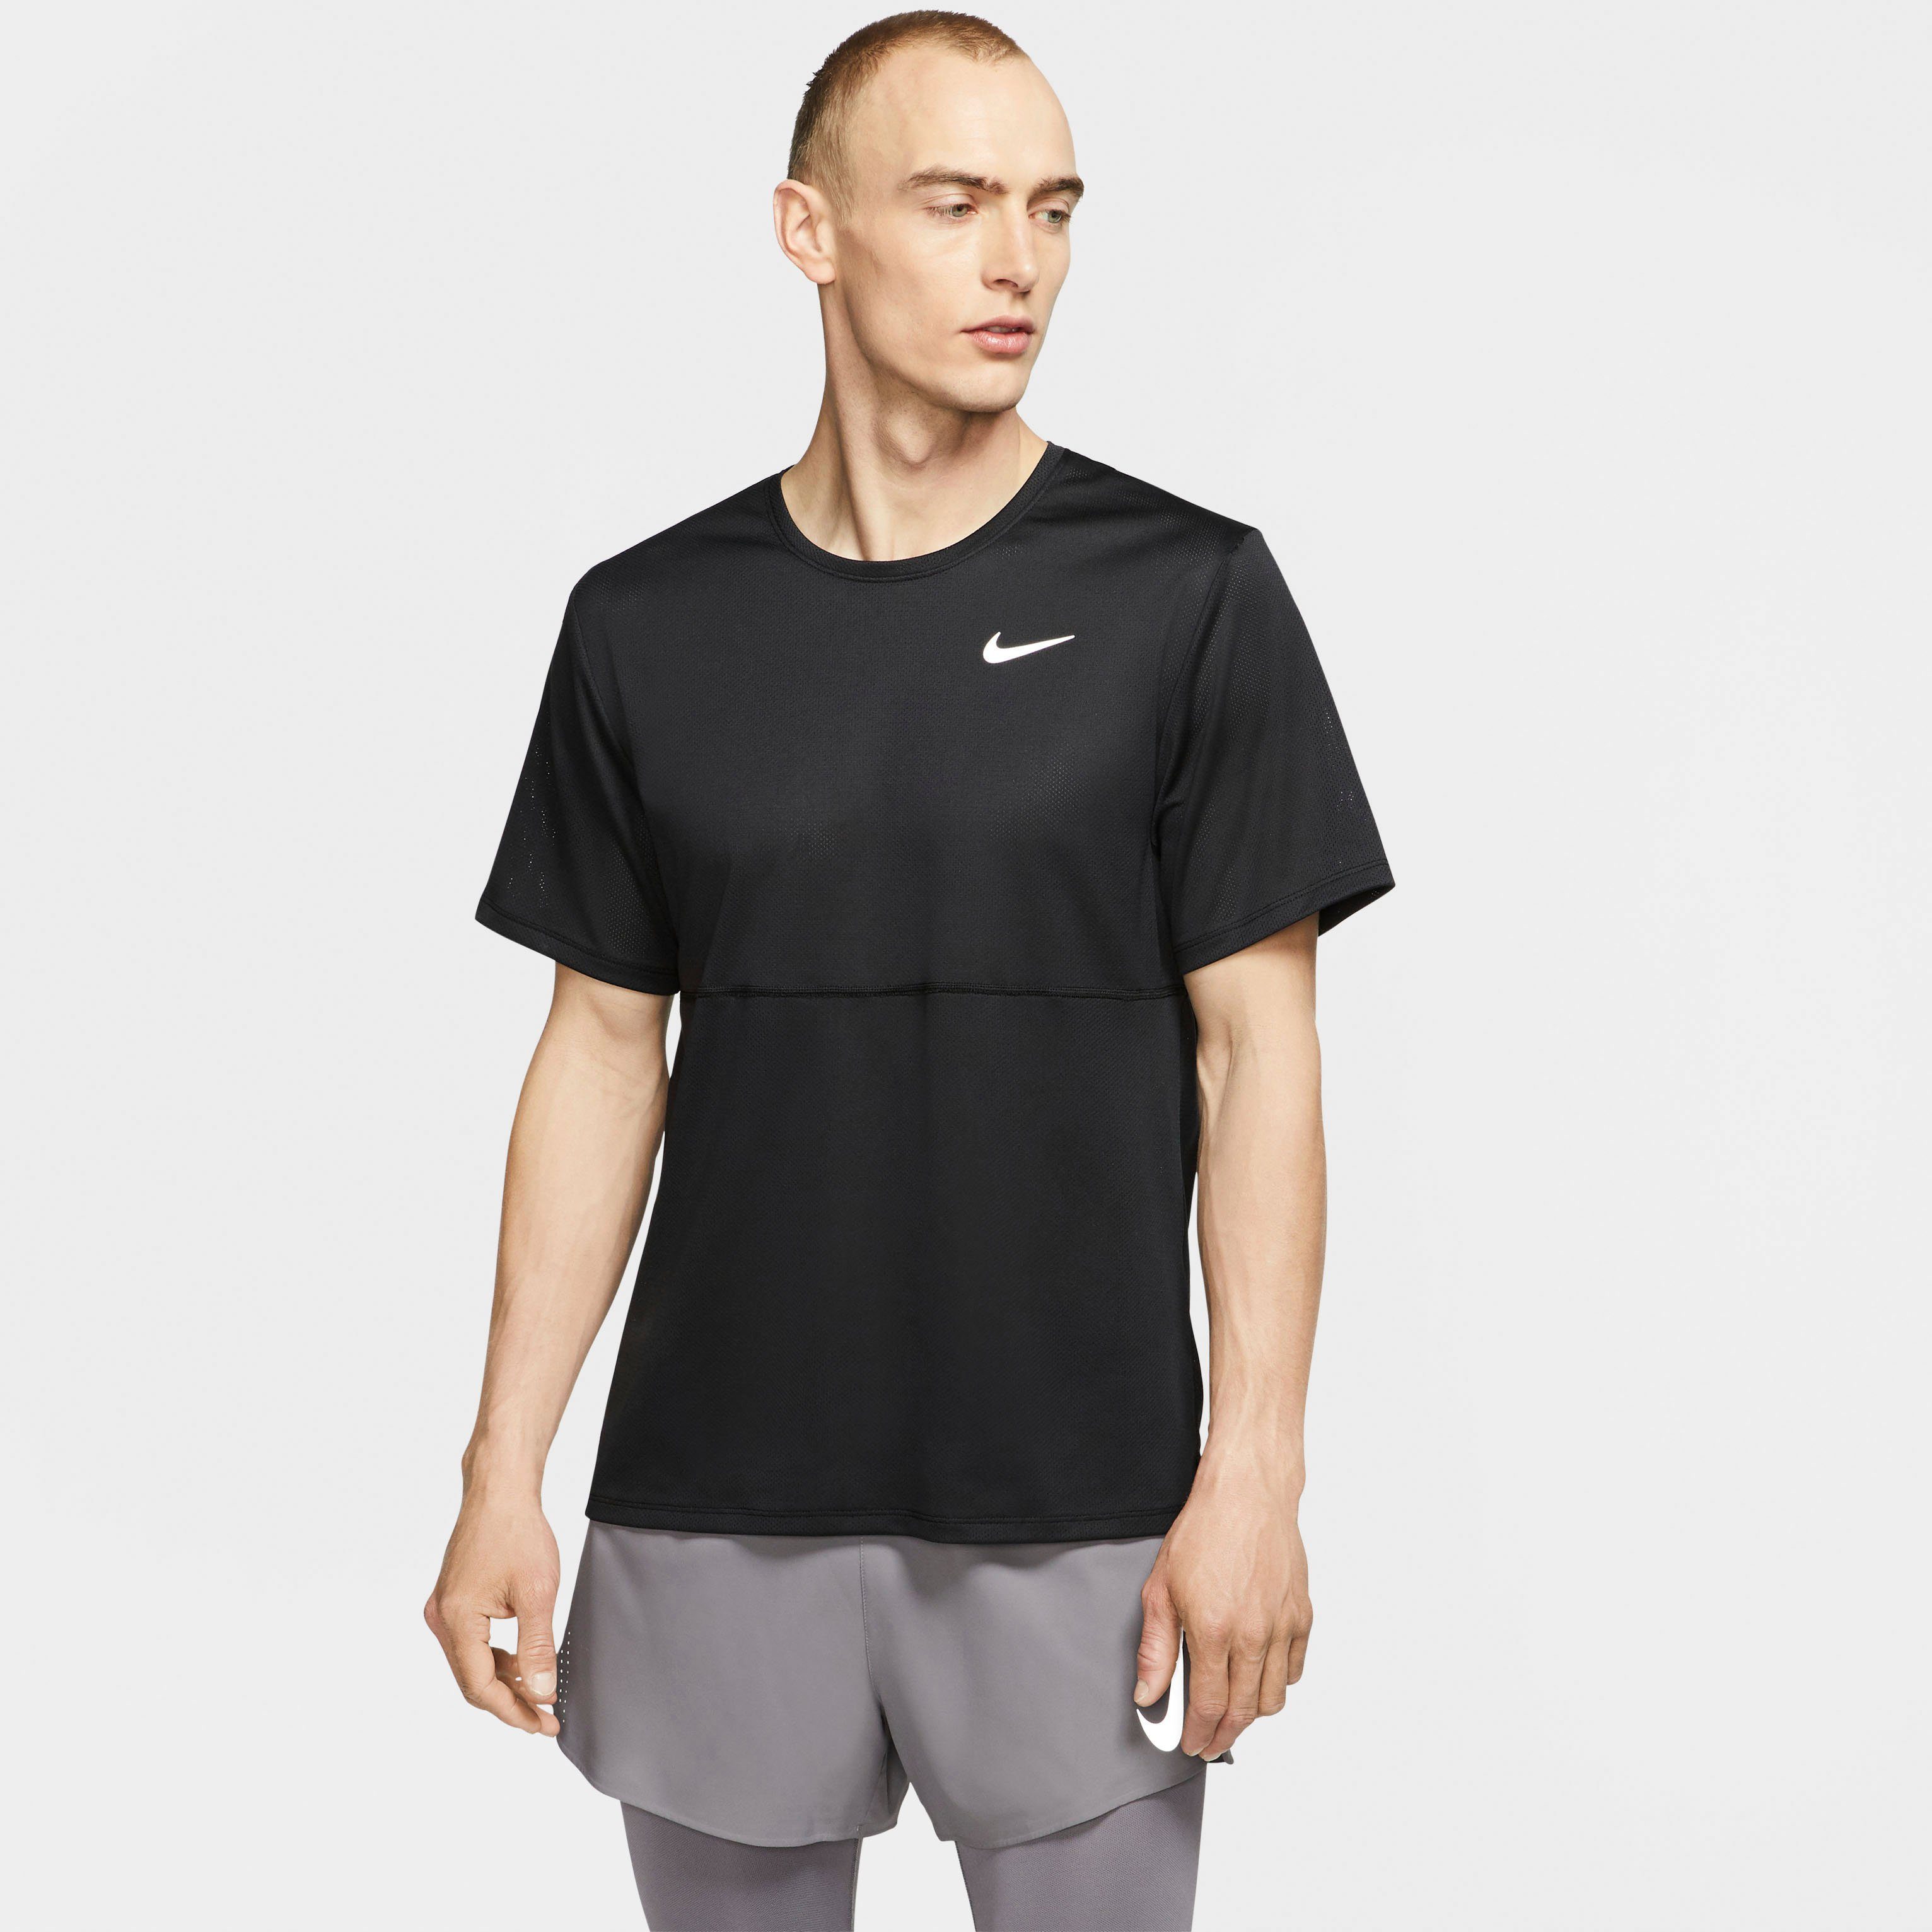 Nike Herren Sportshirts online kaufen | OTTO